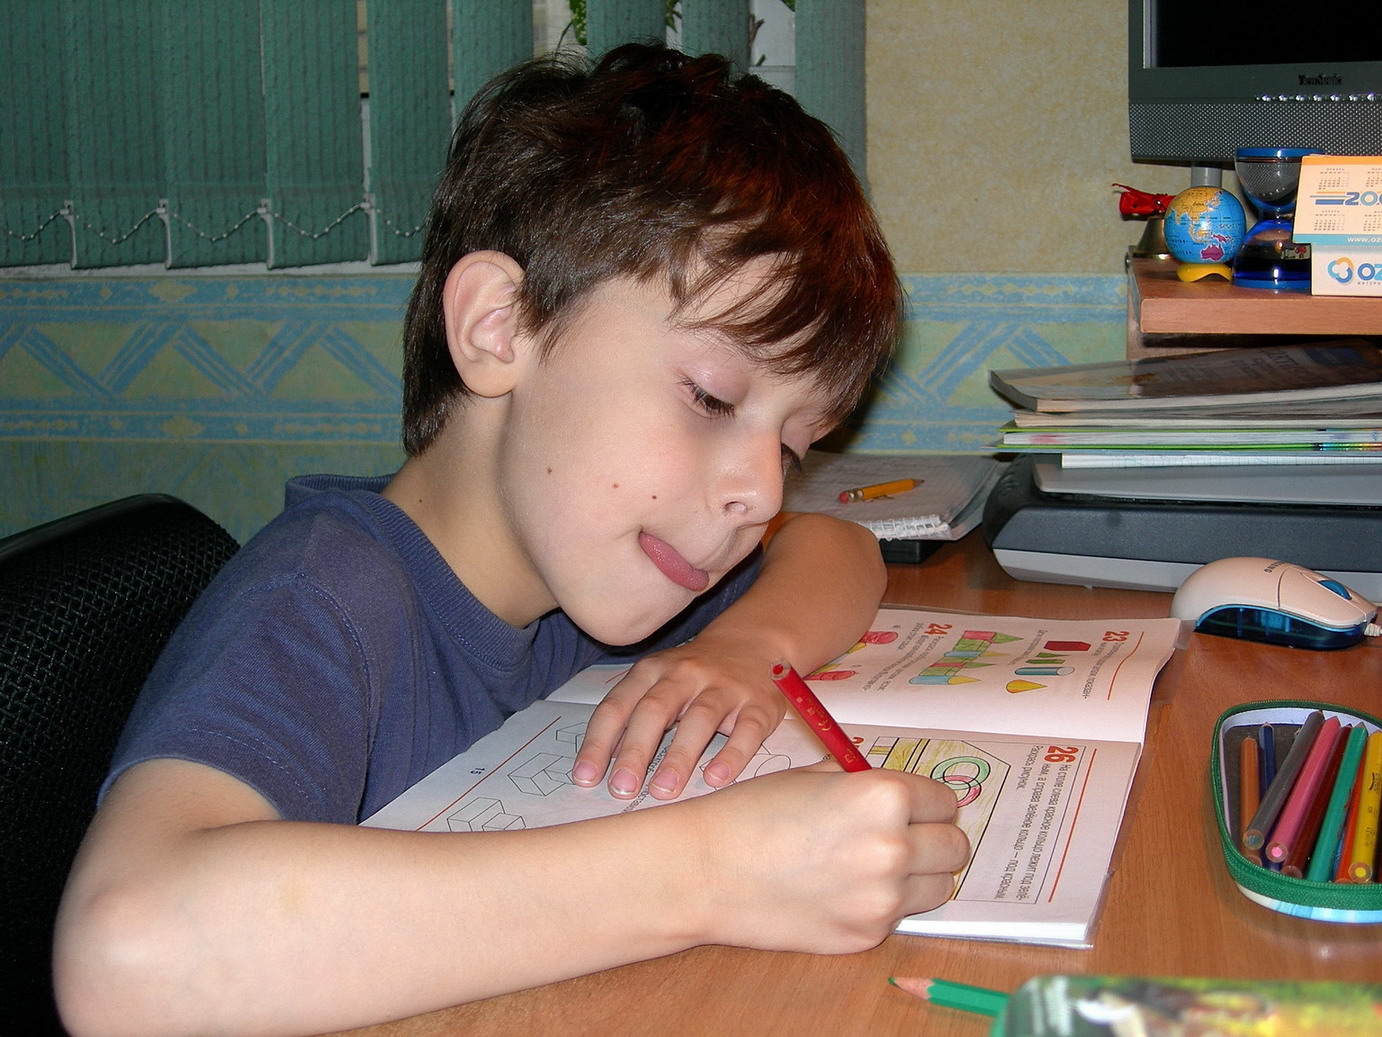 Сегодня будем делать уроки. Домашнее задание школьника. Выполнение домашнего задания. Мальчик учит уроки. Ученик делает домашнюю работу.